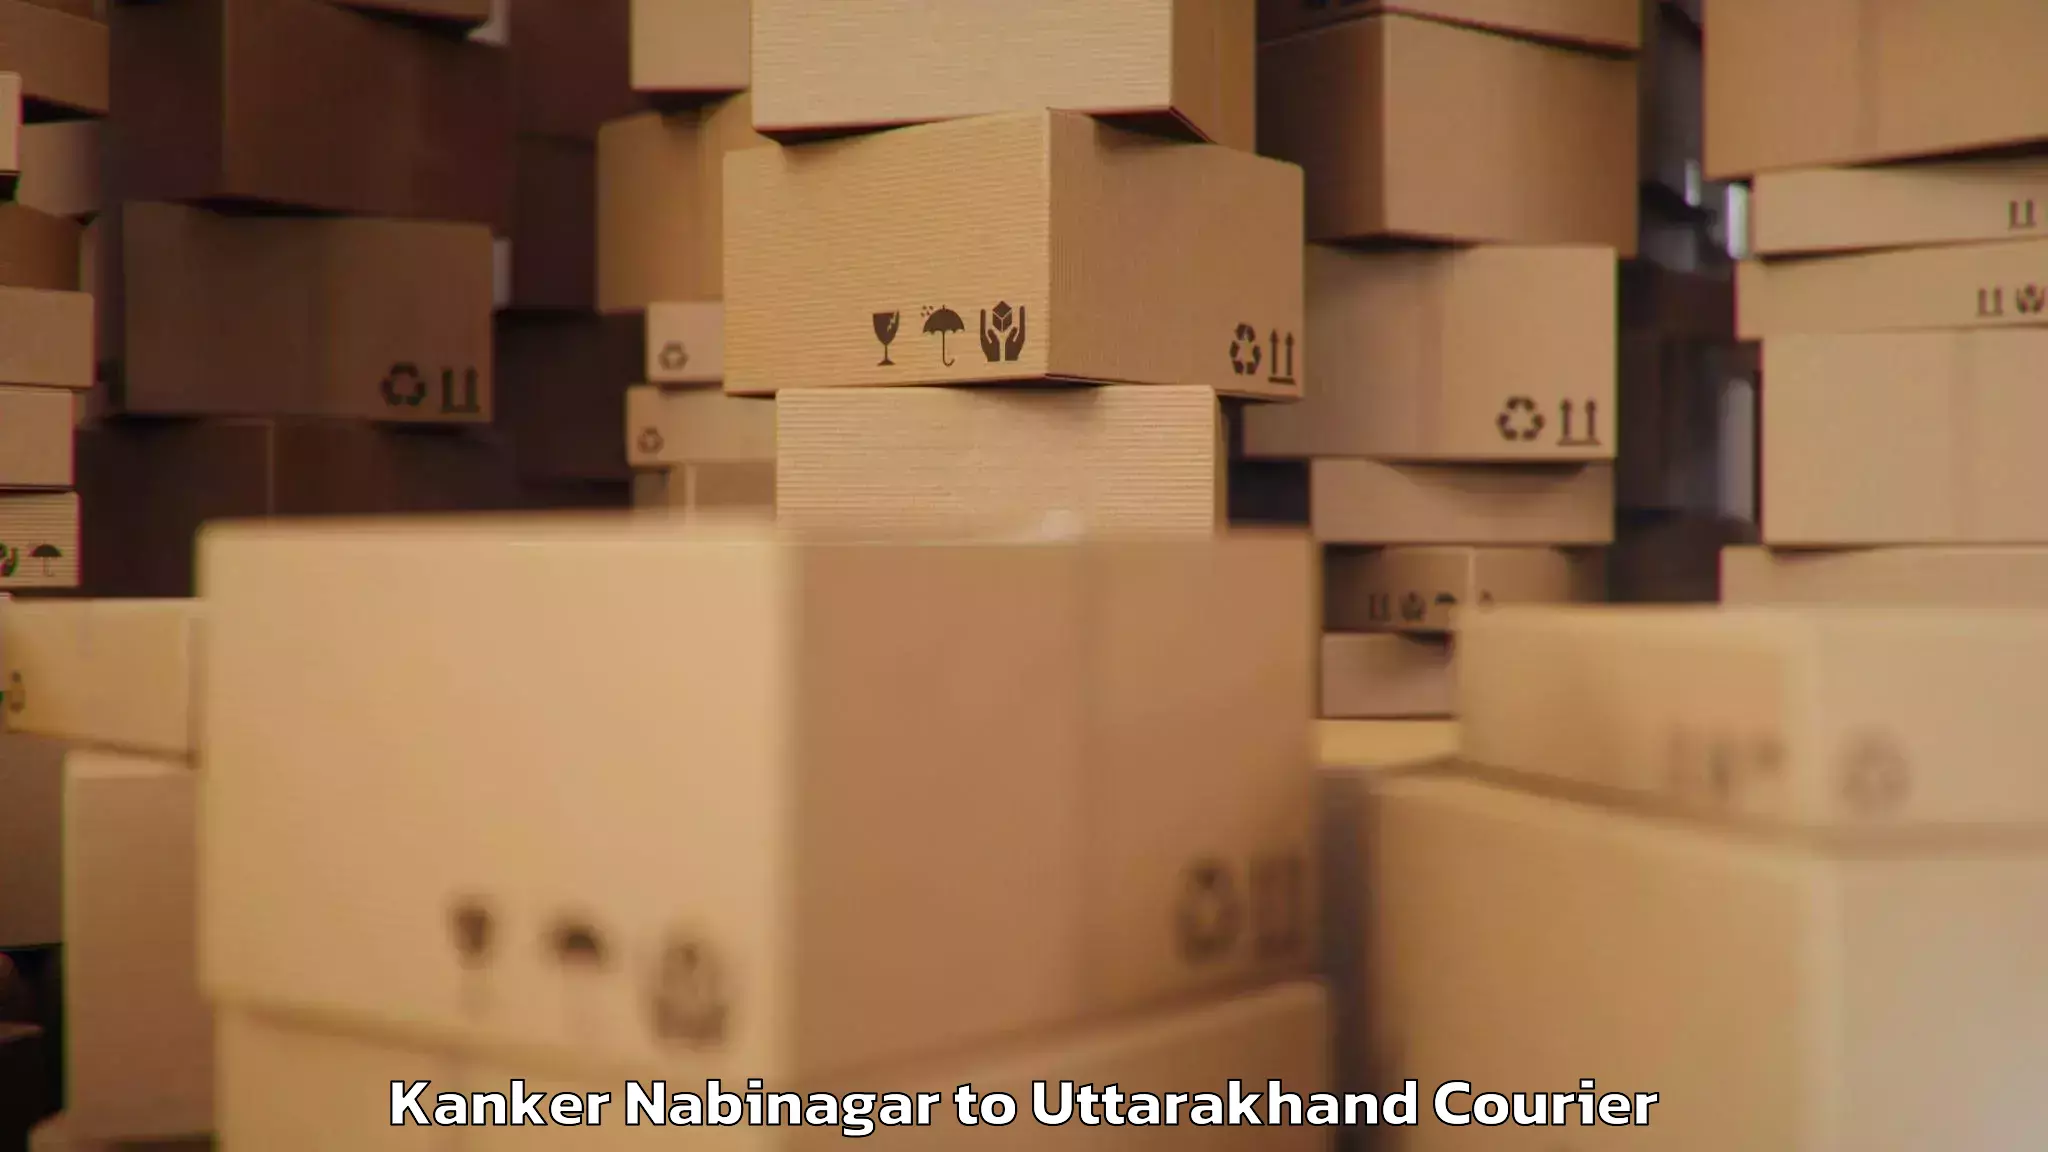 Luggage transport solutions Kanker Nabinagar to Pithoragarh